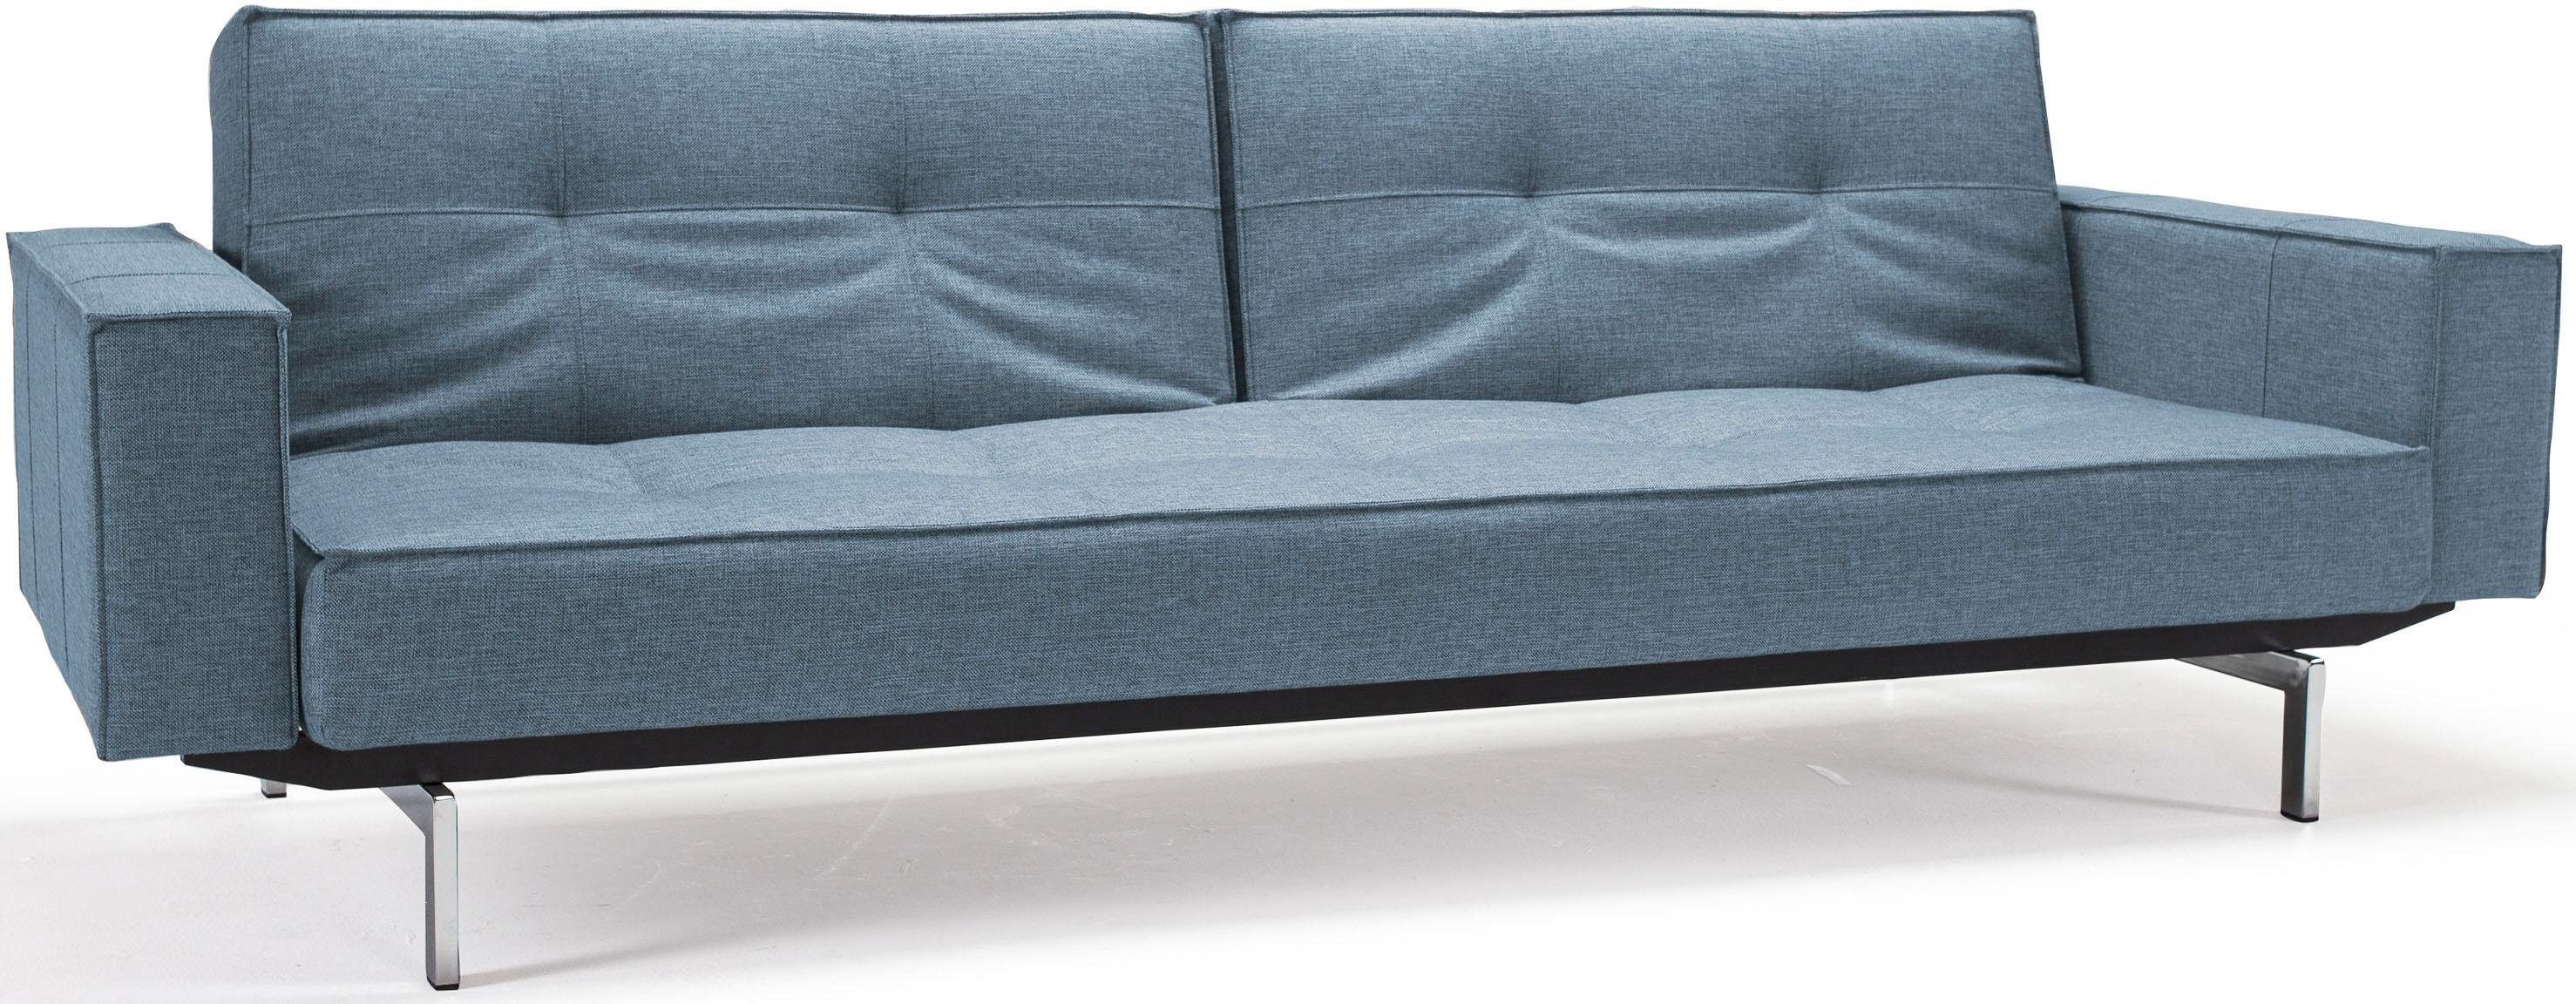 INNOVATION LIVING ™ Sofa Beinen, in Design Splitback, skandinavischen mit Armlehne und chromglänzenden